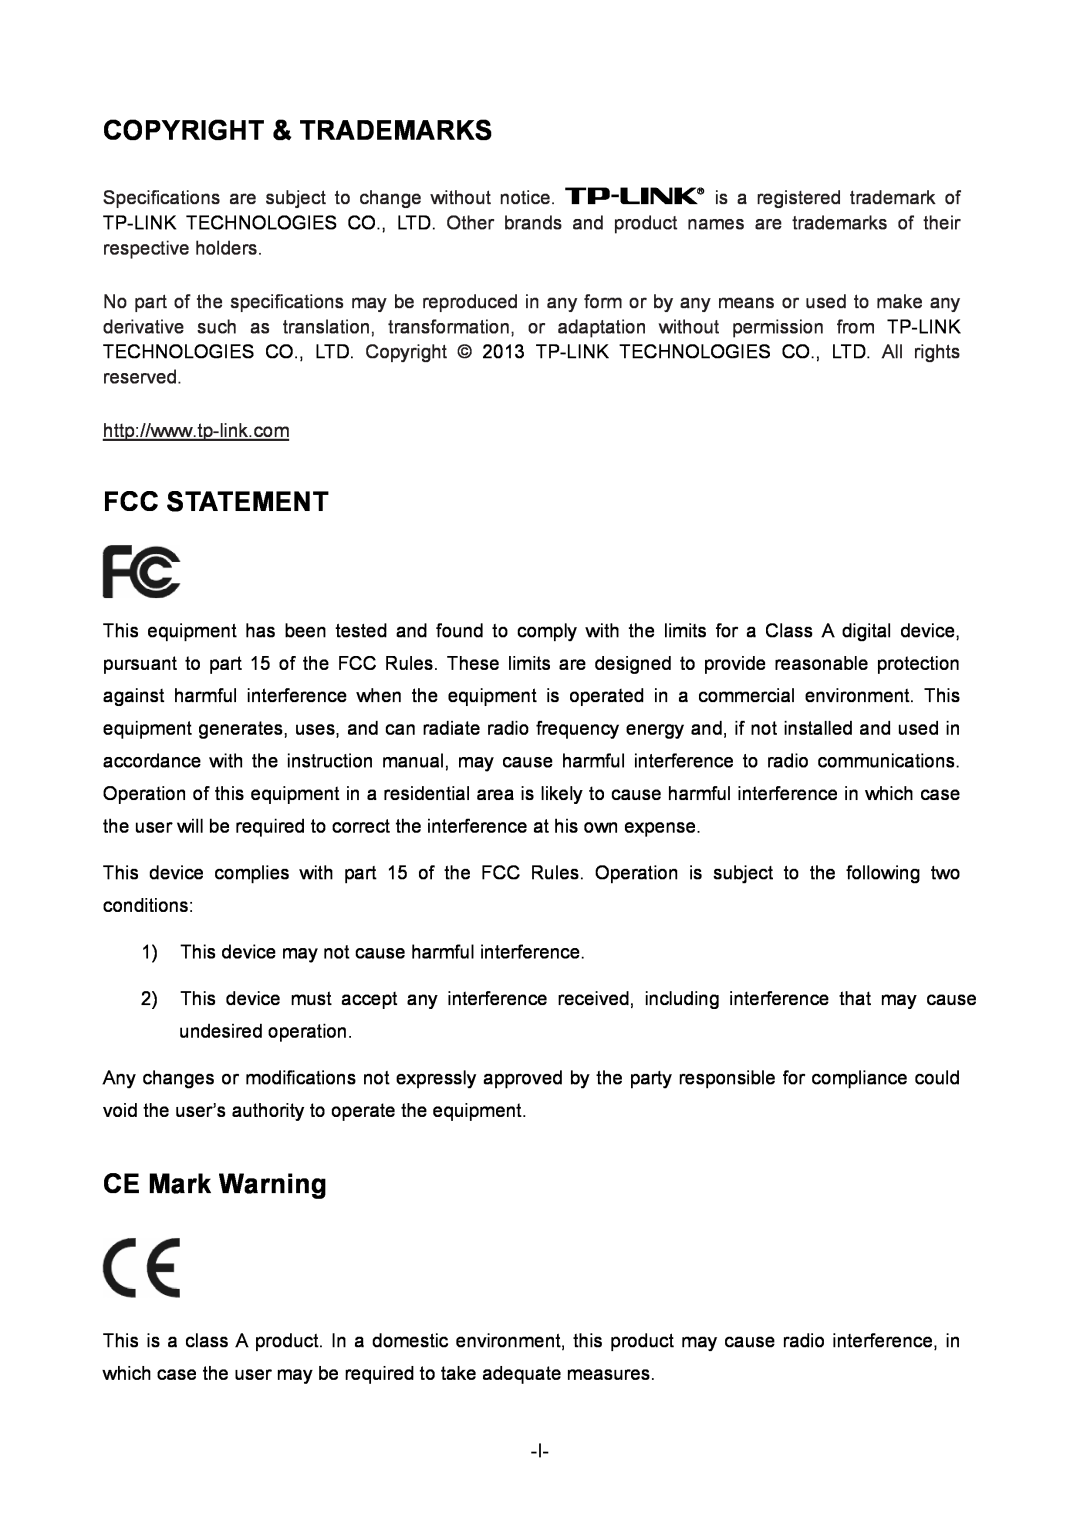 TP-Link TL-ER6020 manual Copyright & Trademarks, Fcc Statement, CE Mark Warning 